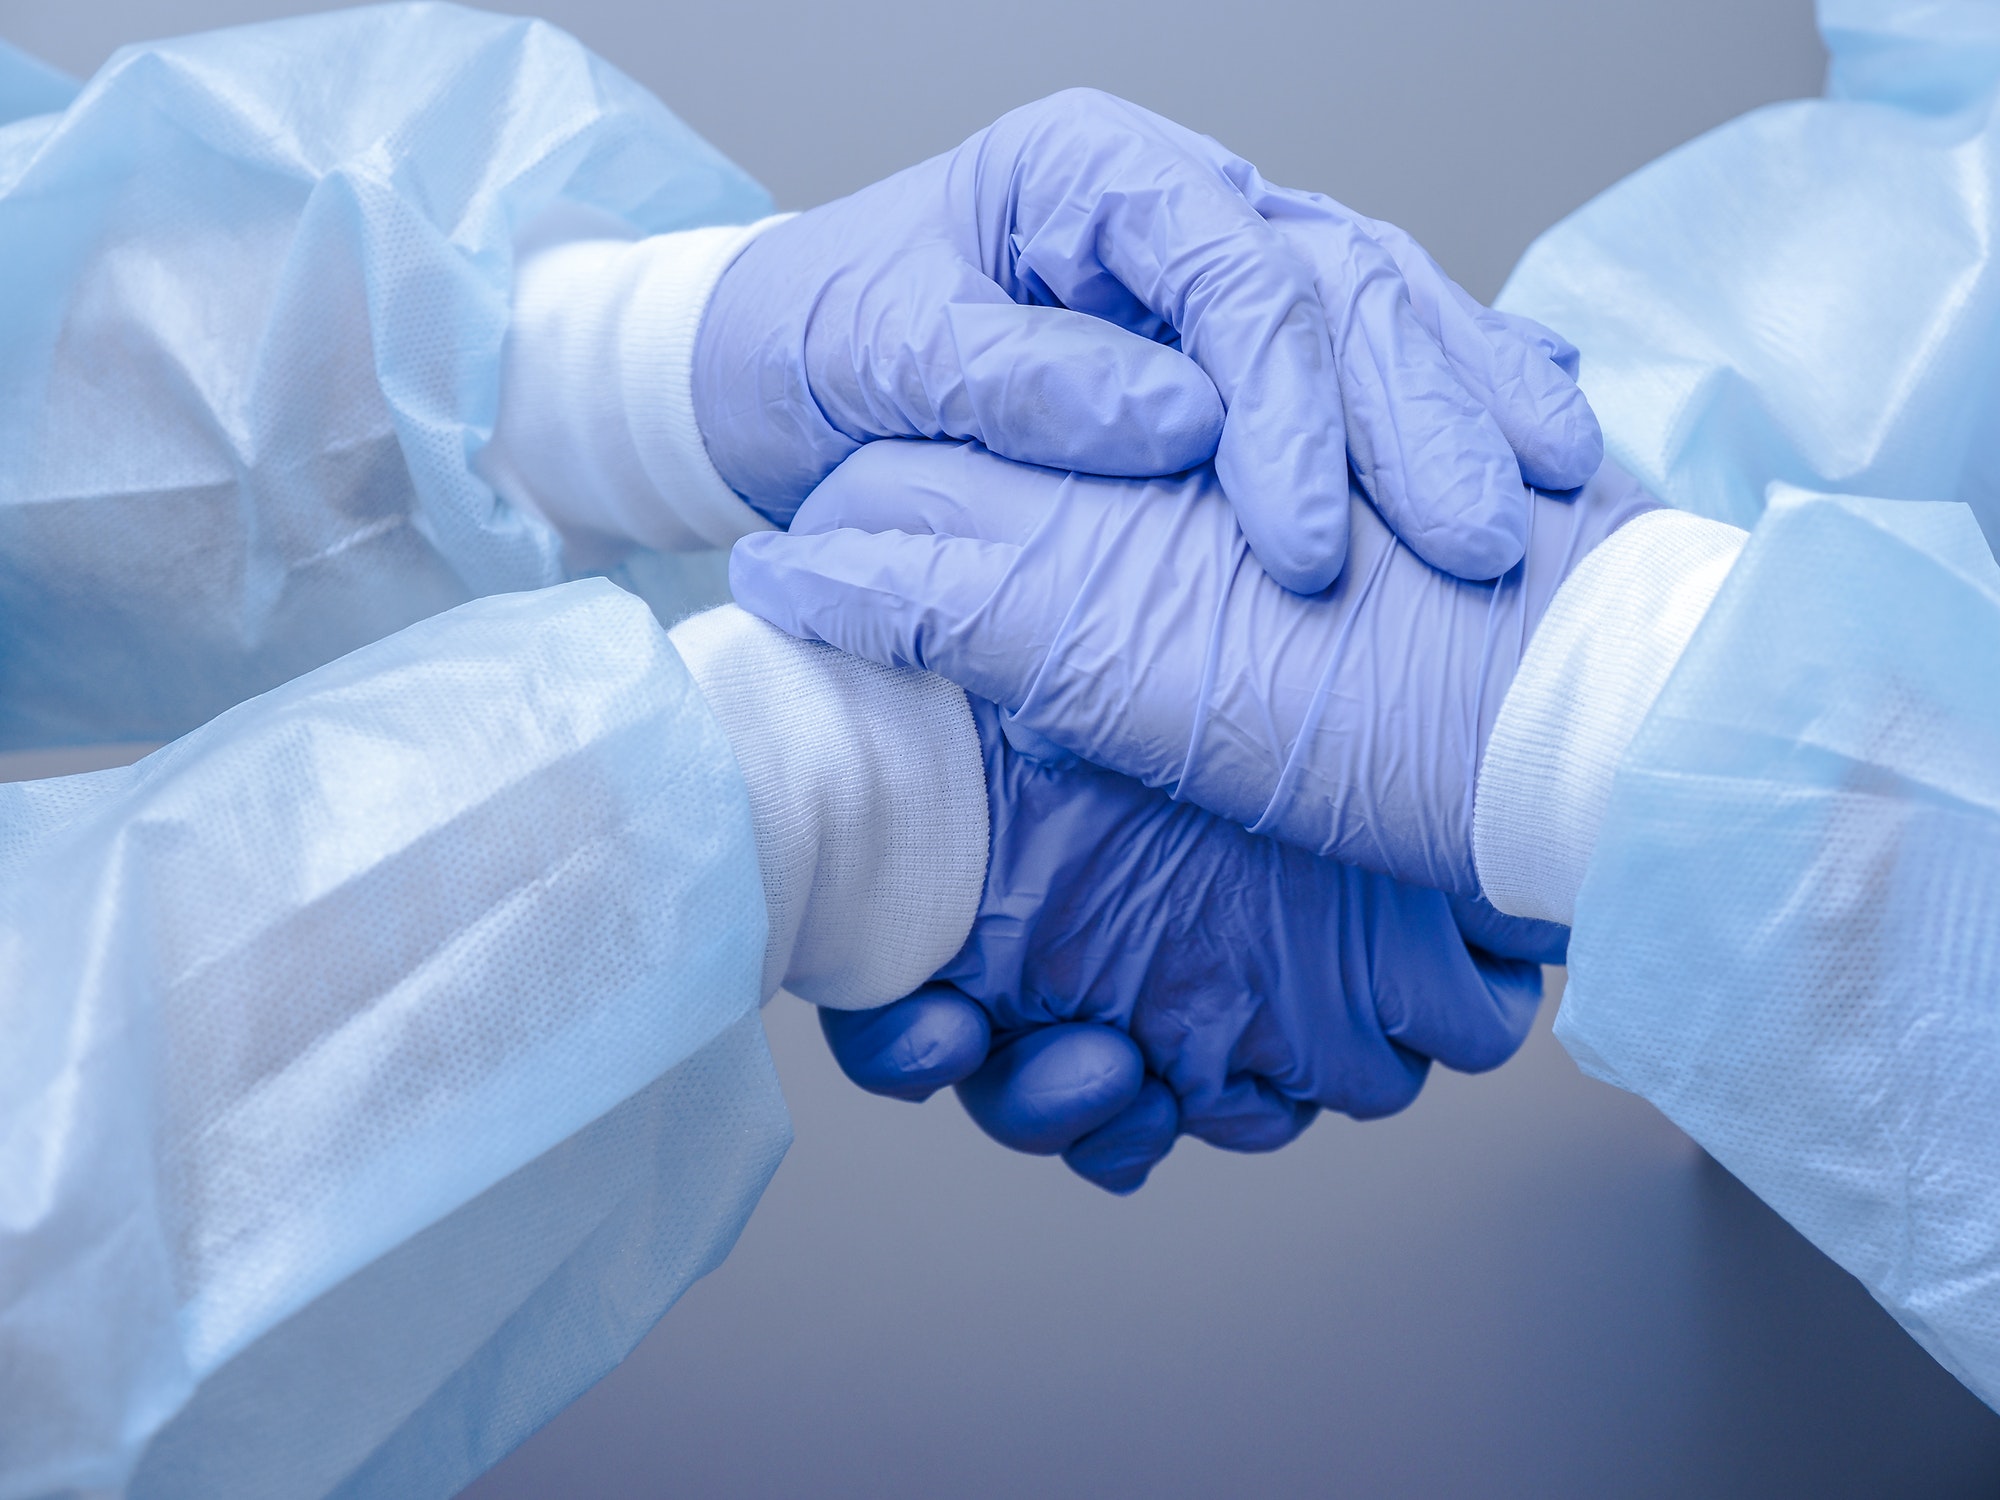 Doctors shake hands